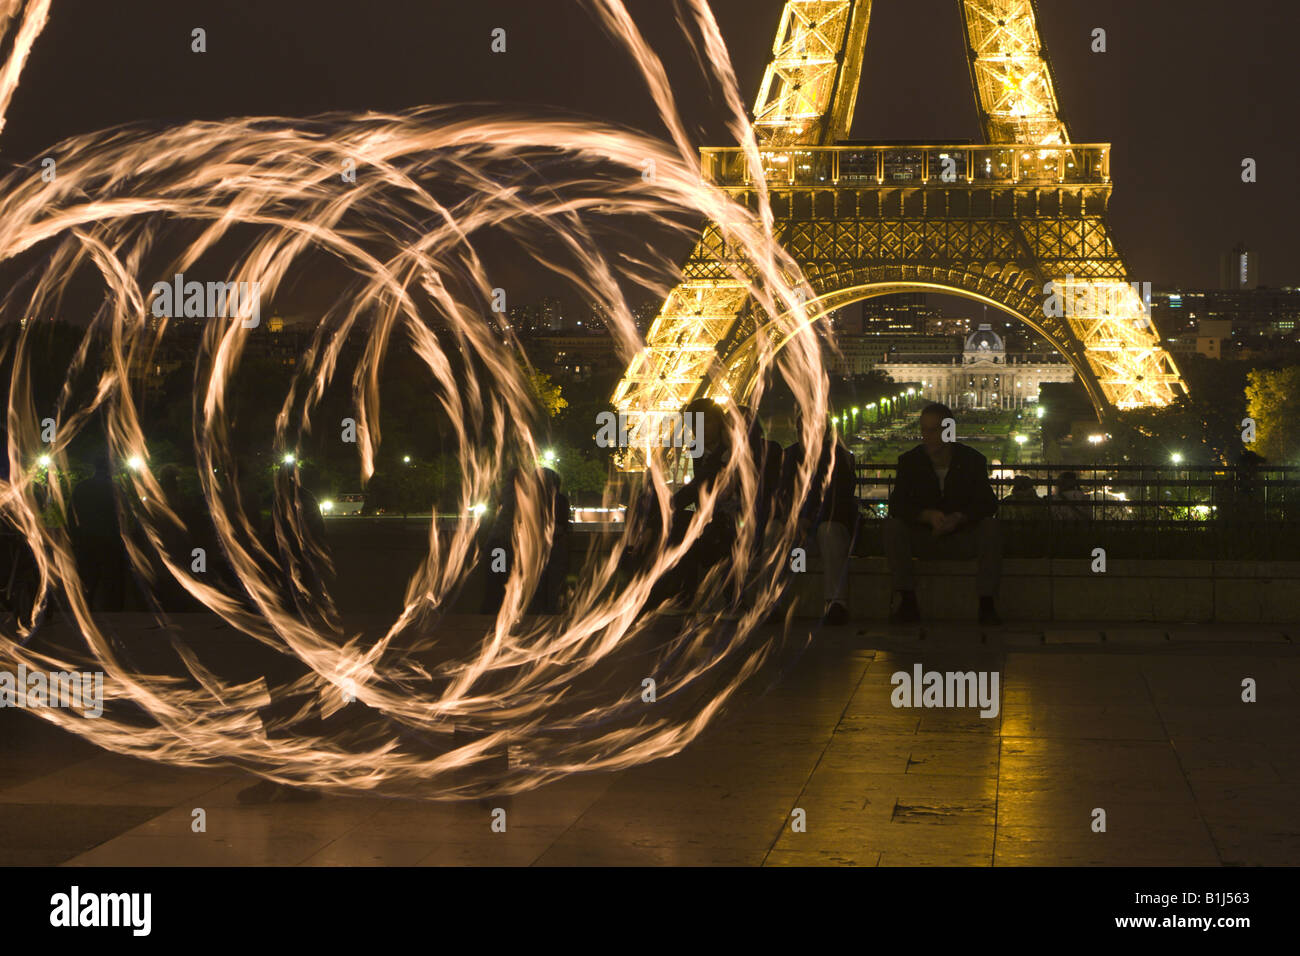 Fackel-Jongleur in Paris bei Nacht - Eiffelturm Stockfoto